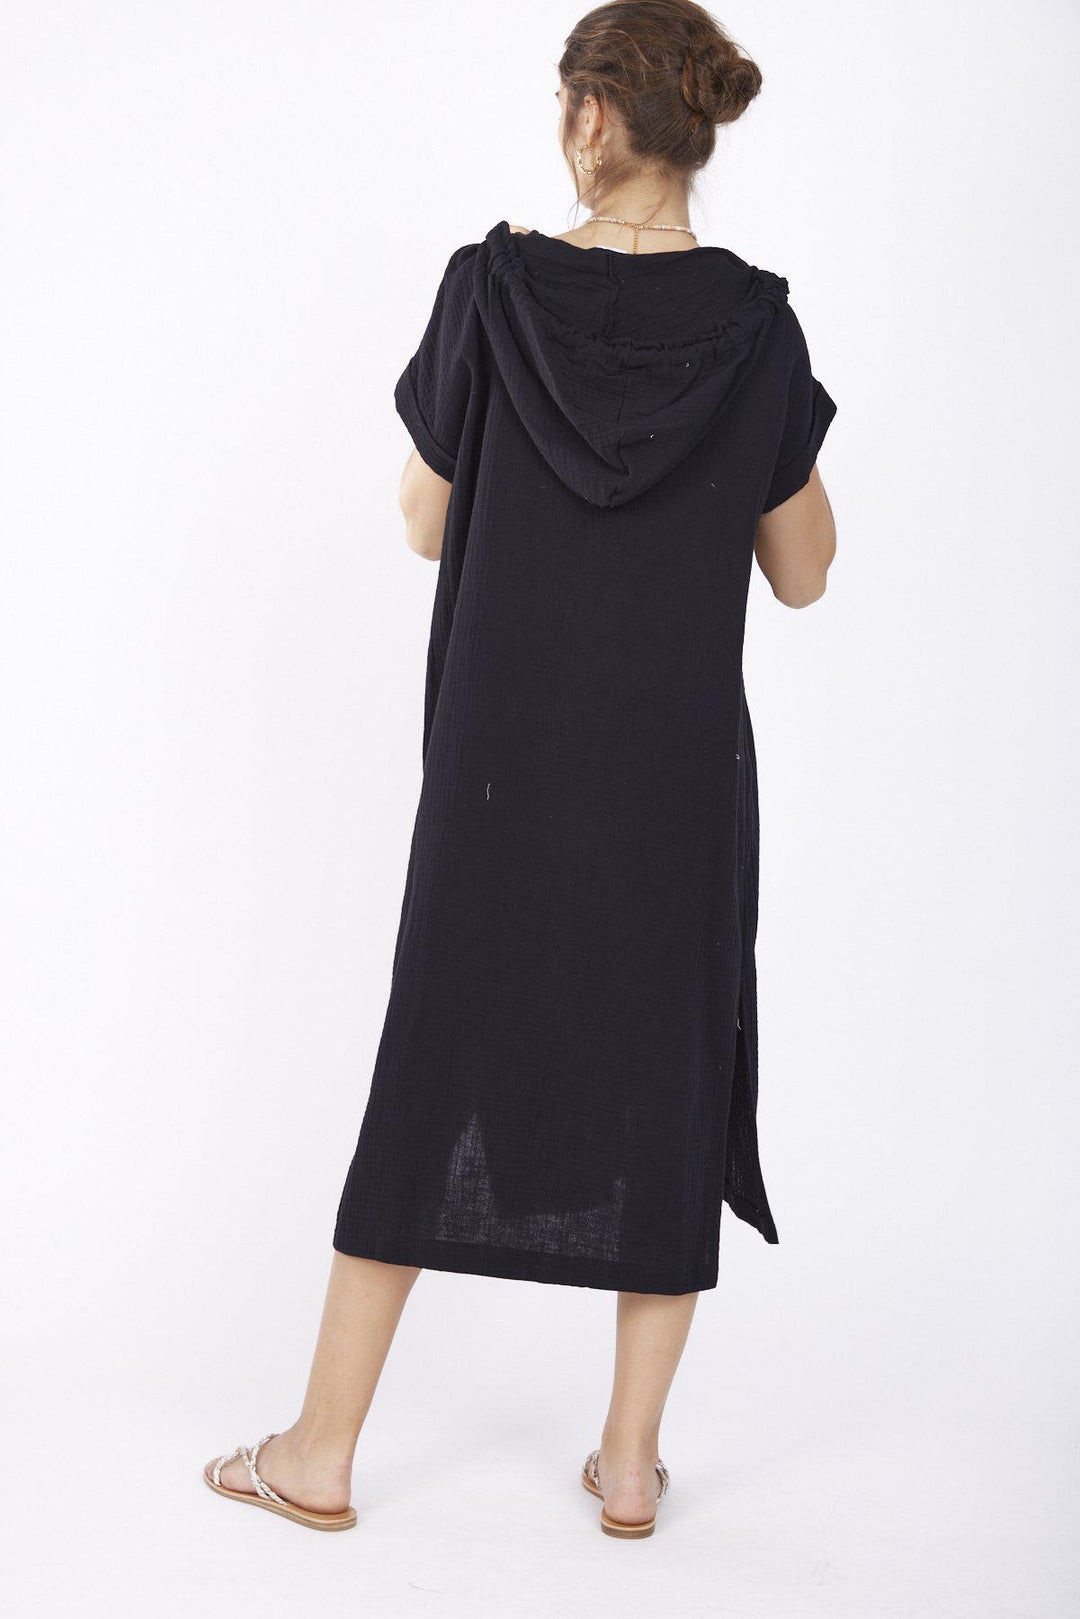 שמלת מאתיס בצבע שחור - Re